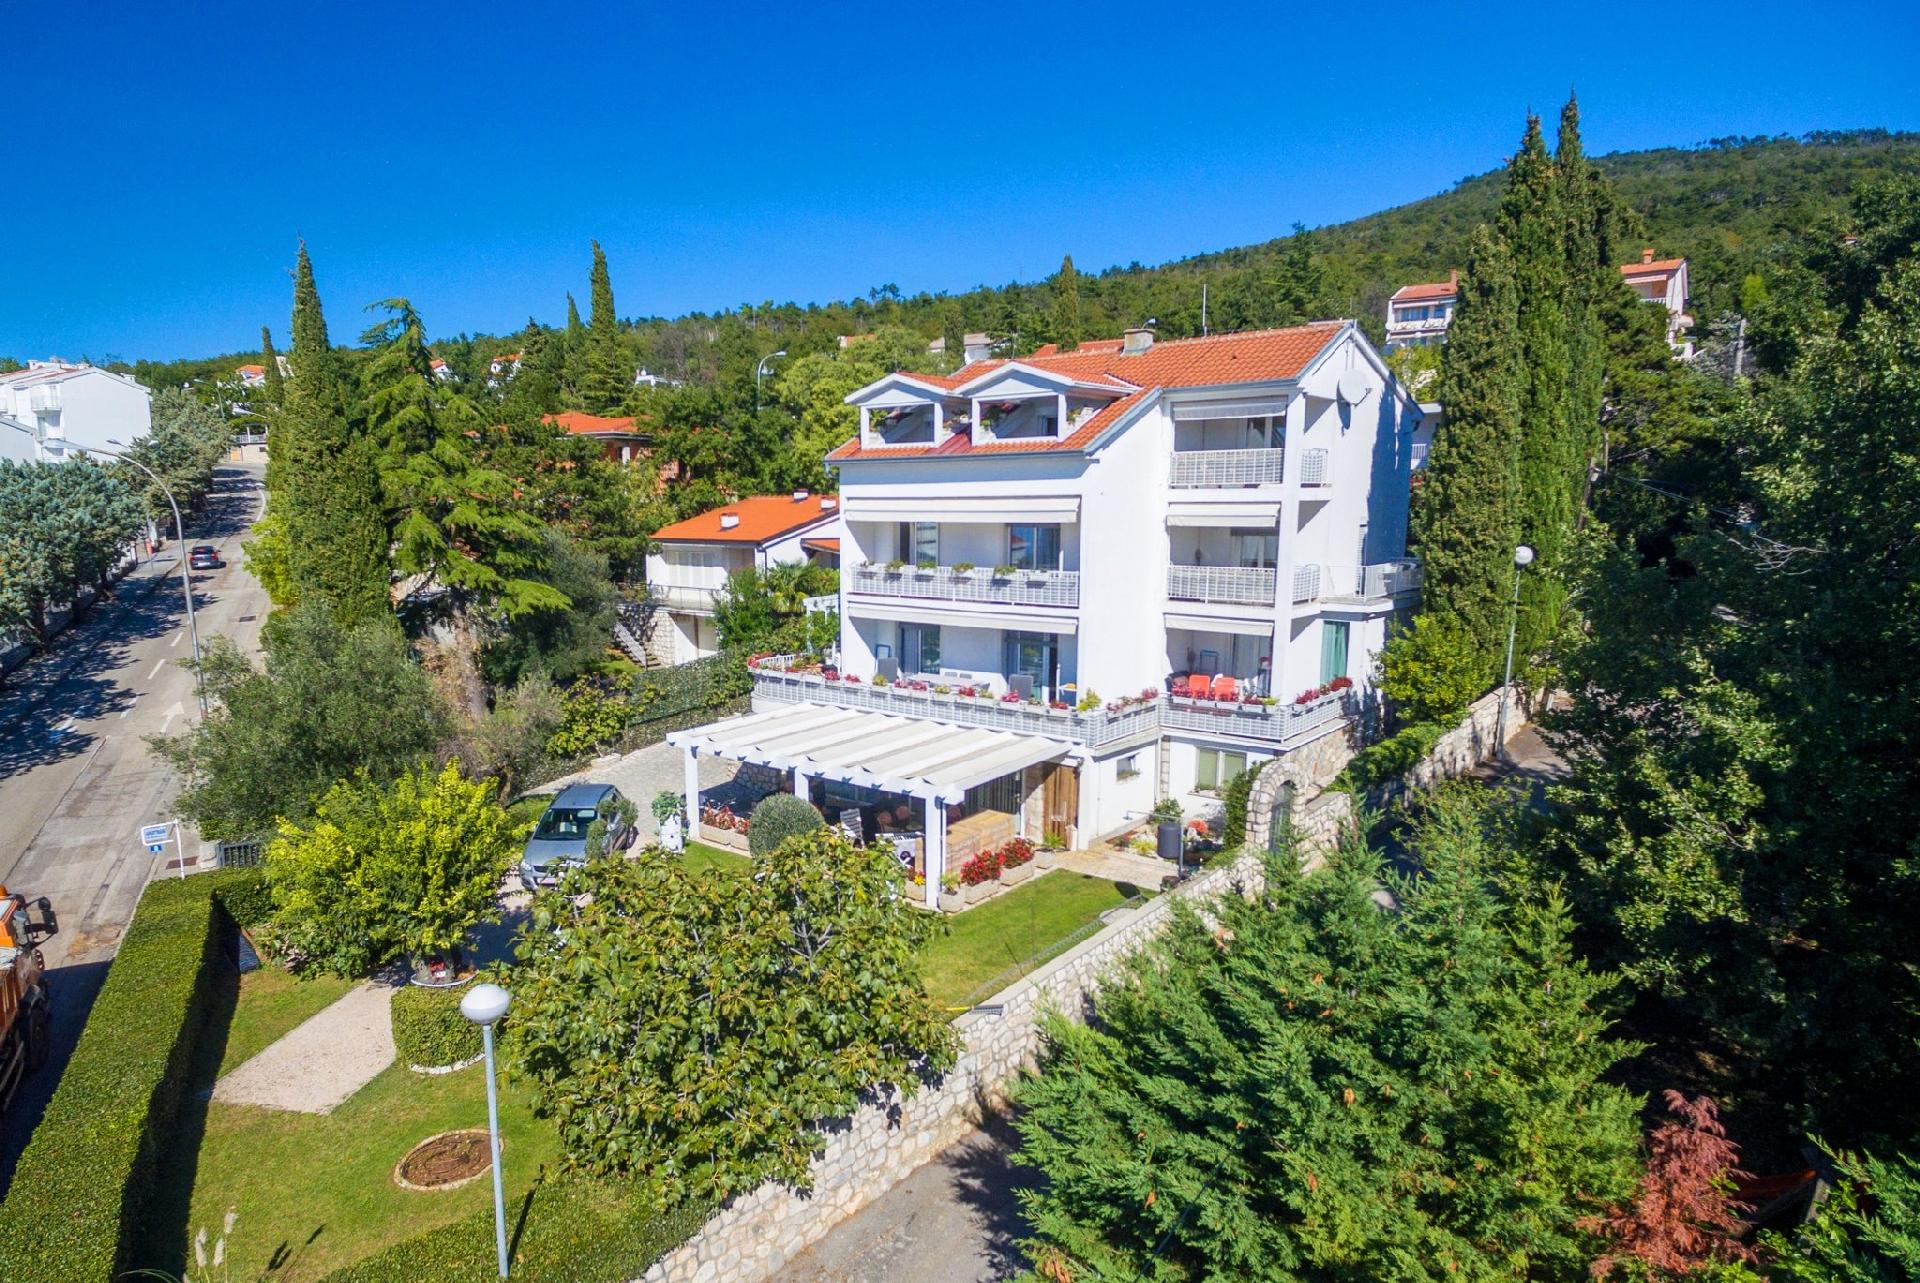 Ferienwohnung für 2 Personen ca. 29 m² i  in Kroatien